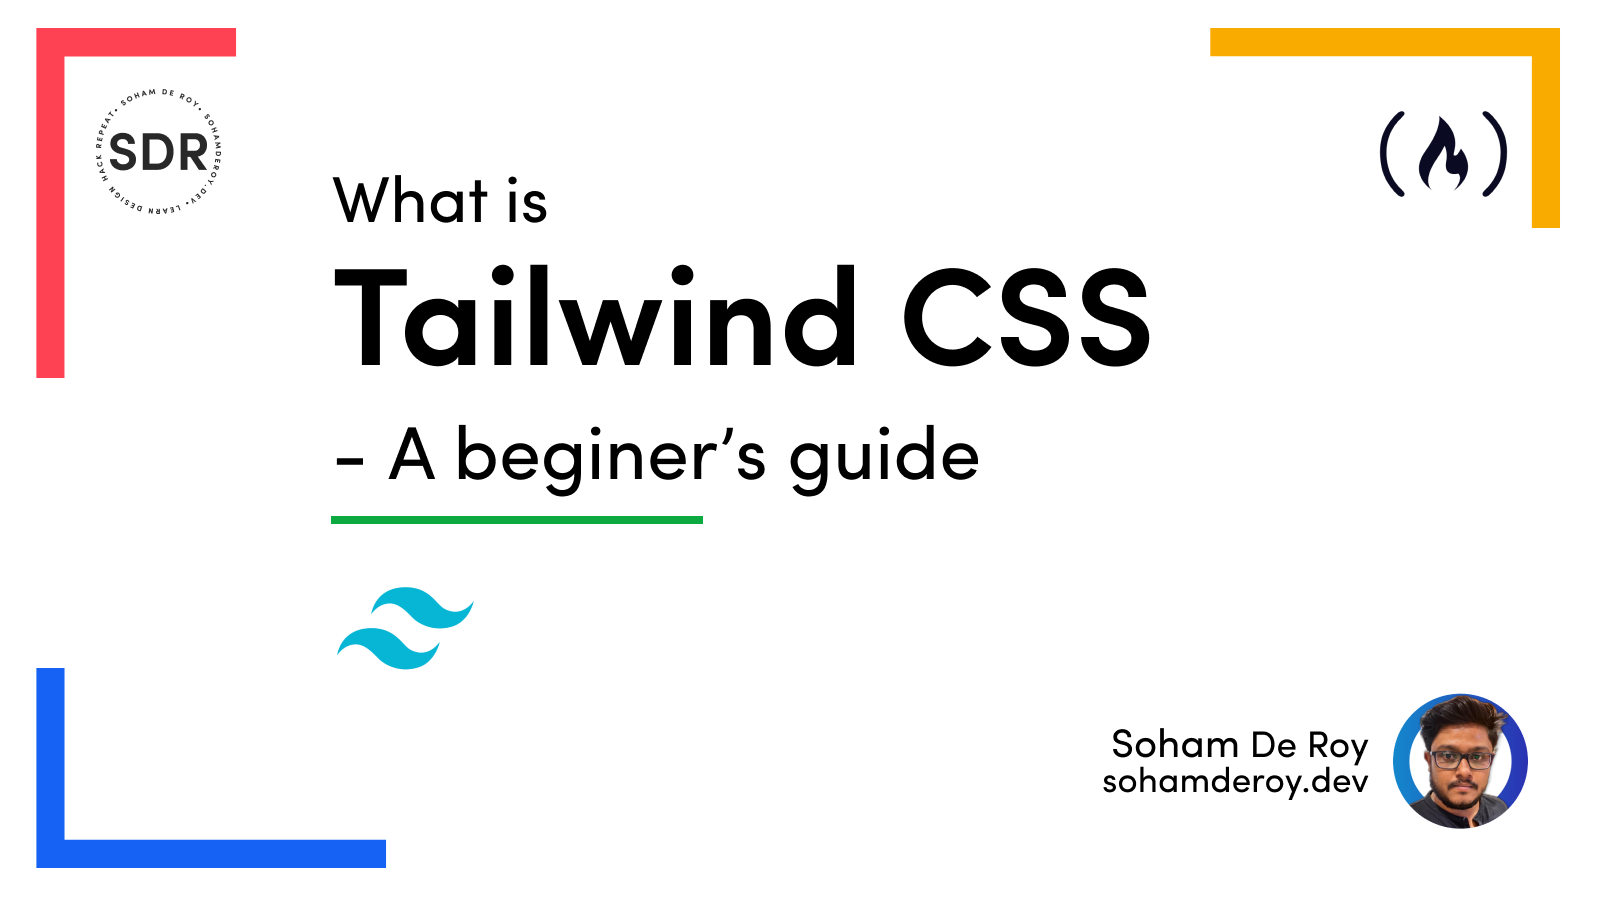 Tailwind CSS: Nếu bạn muốn sở hữu một trang web thật đẹp và chuyên nghiệp mà không cần phải quá chú trọng đến coding, thì Tailwind CSS là một trong những lựa chọn hàng đầu dành cho bạn. Hãy xem hình ảnh liên quan đến từ khóa này để khám phá thêm những tính năng và ưu điểm của Tailwind CSS nhé! 